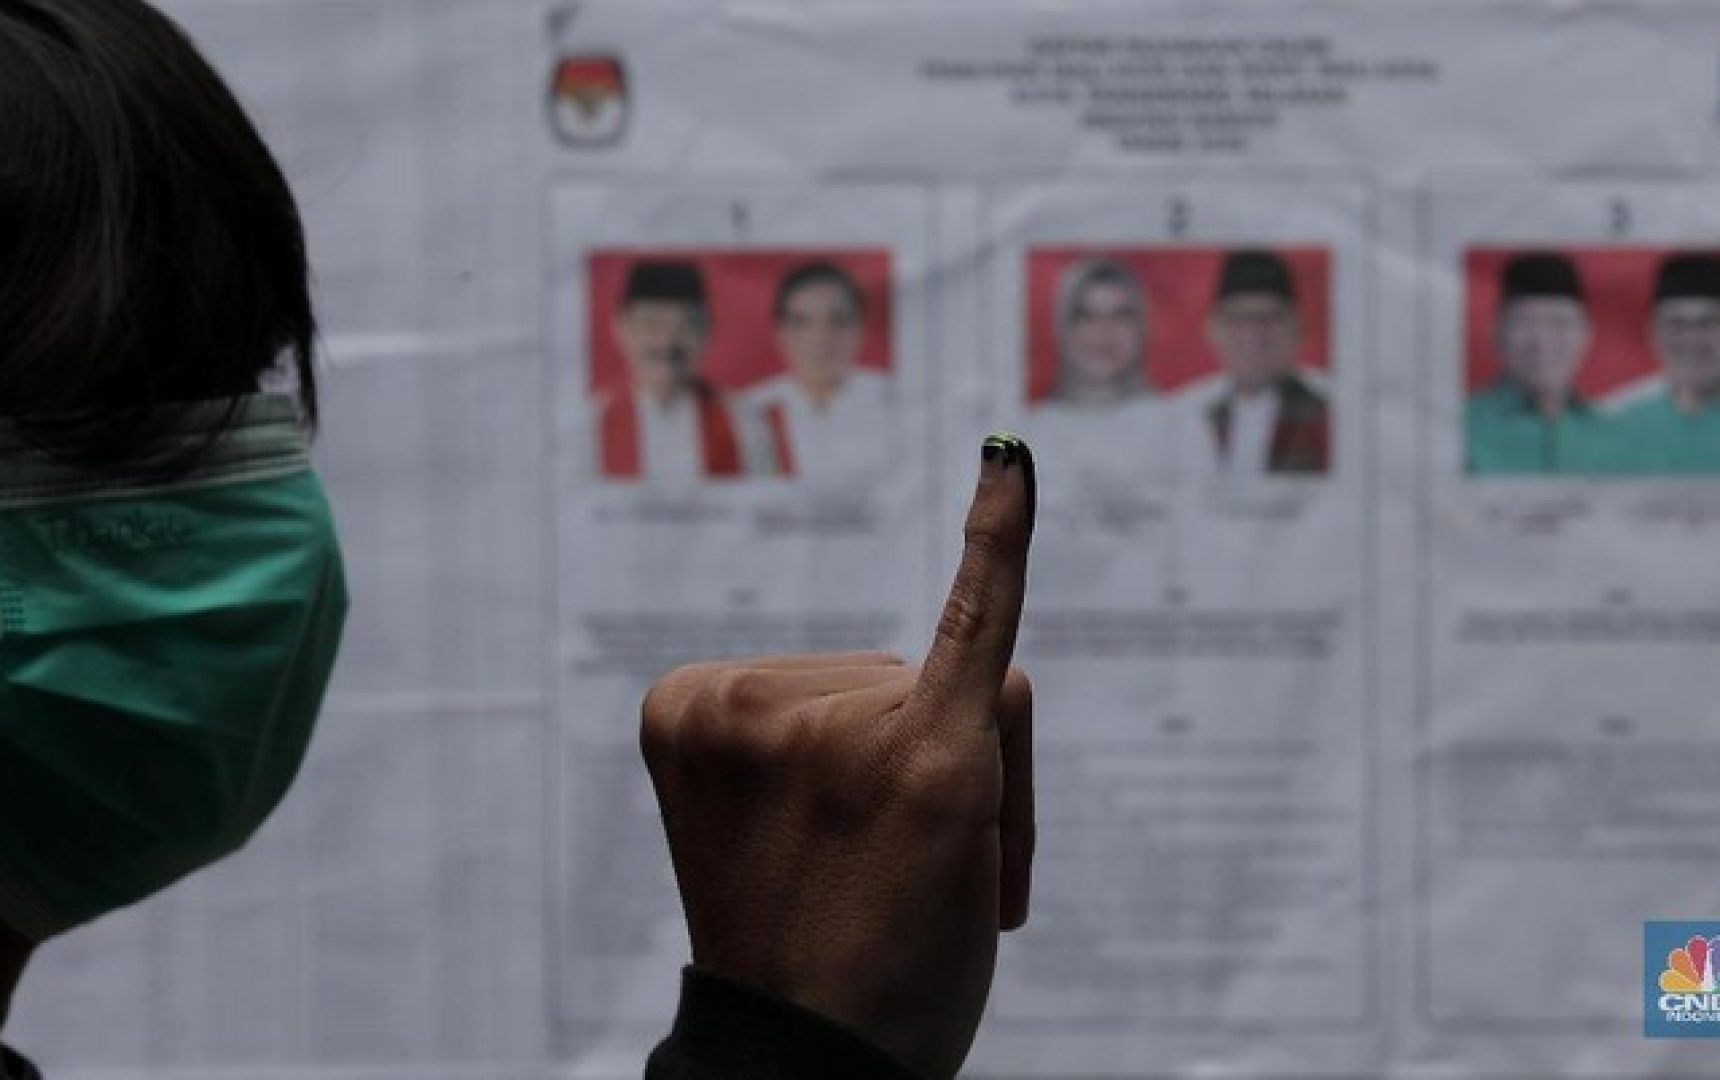 tempat-pemungutan-suara-tps-68-pondok-aren-tangerang-selatan-di-pemilihan-umum-pilkada-walikota-tangerang-selatan-cnbc-indones-8_169